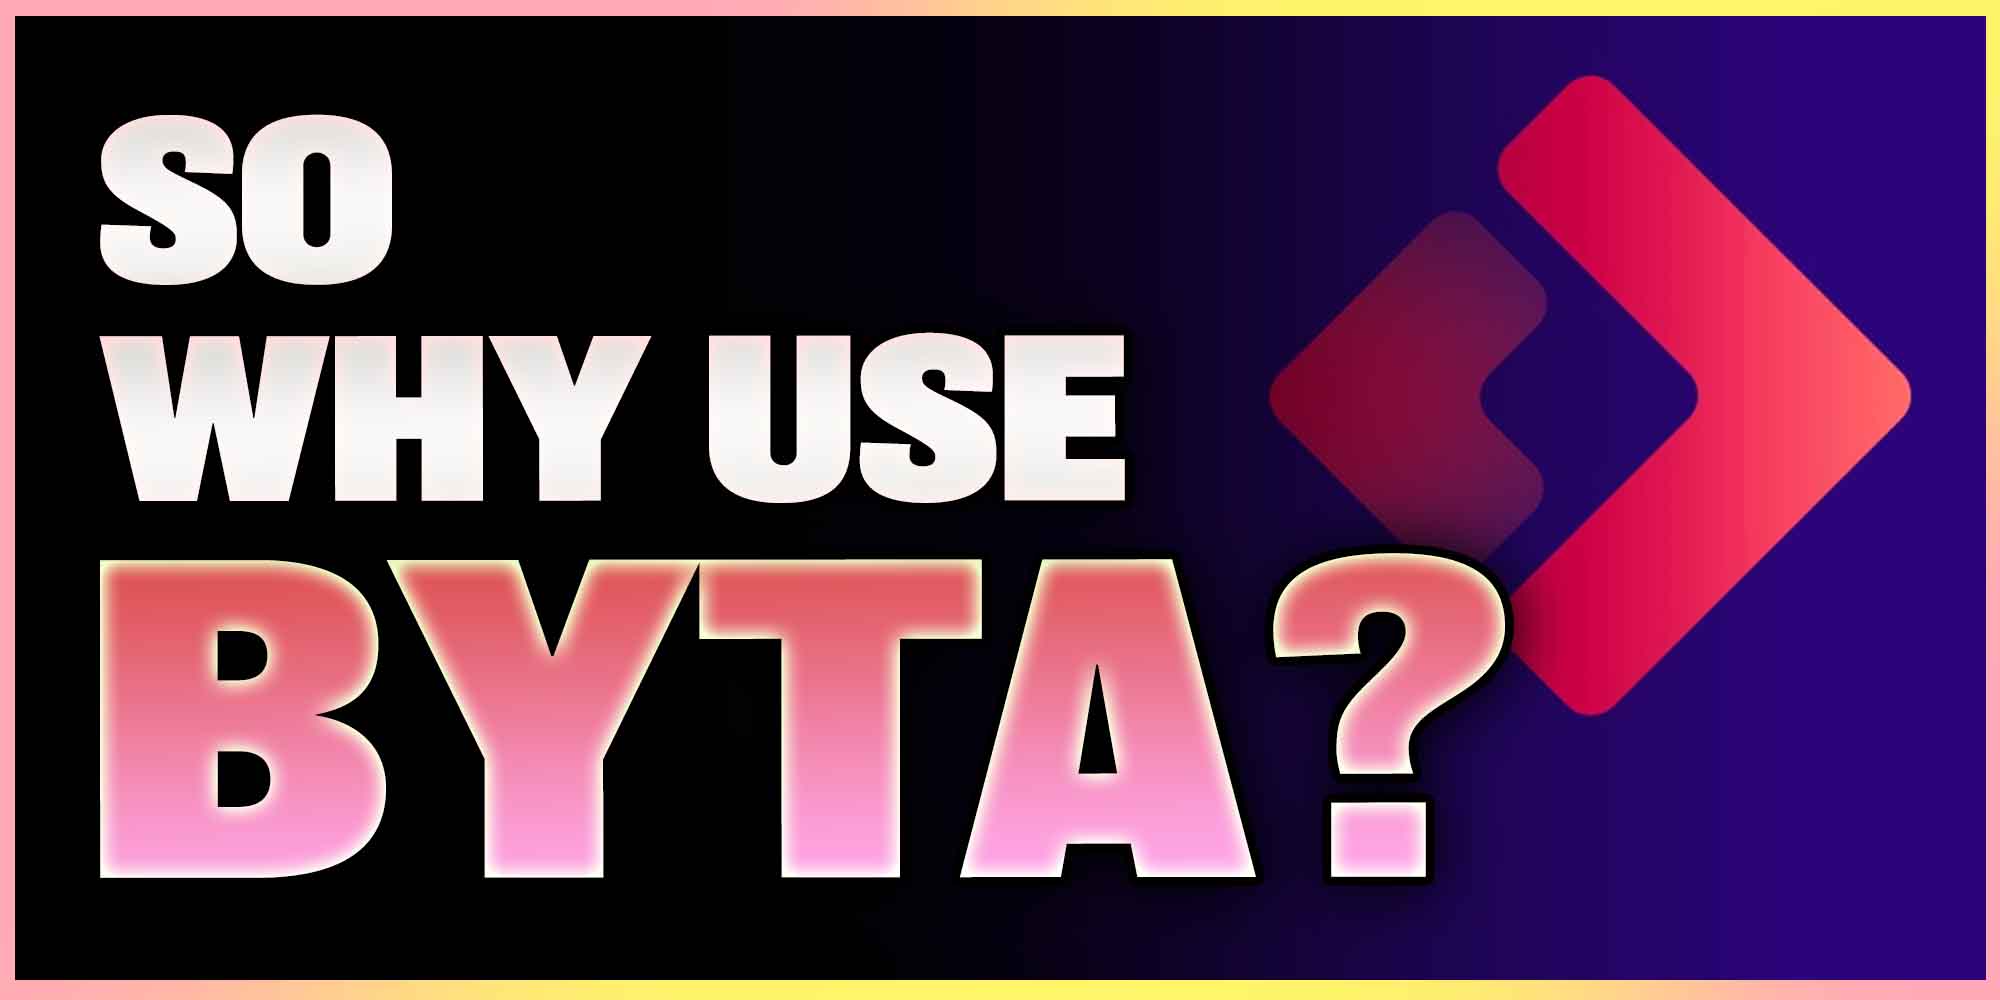 So Why Use Byta